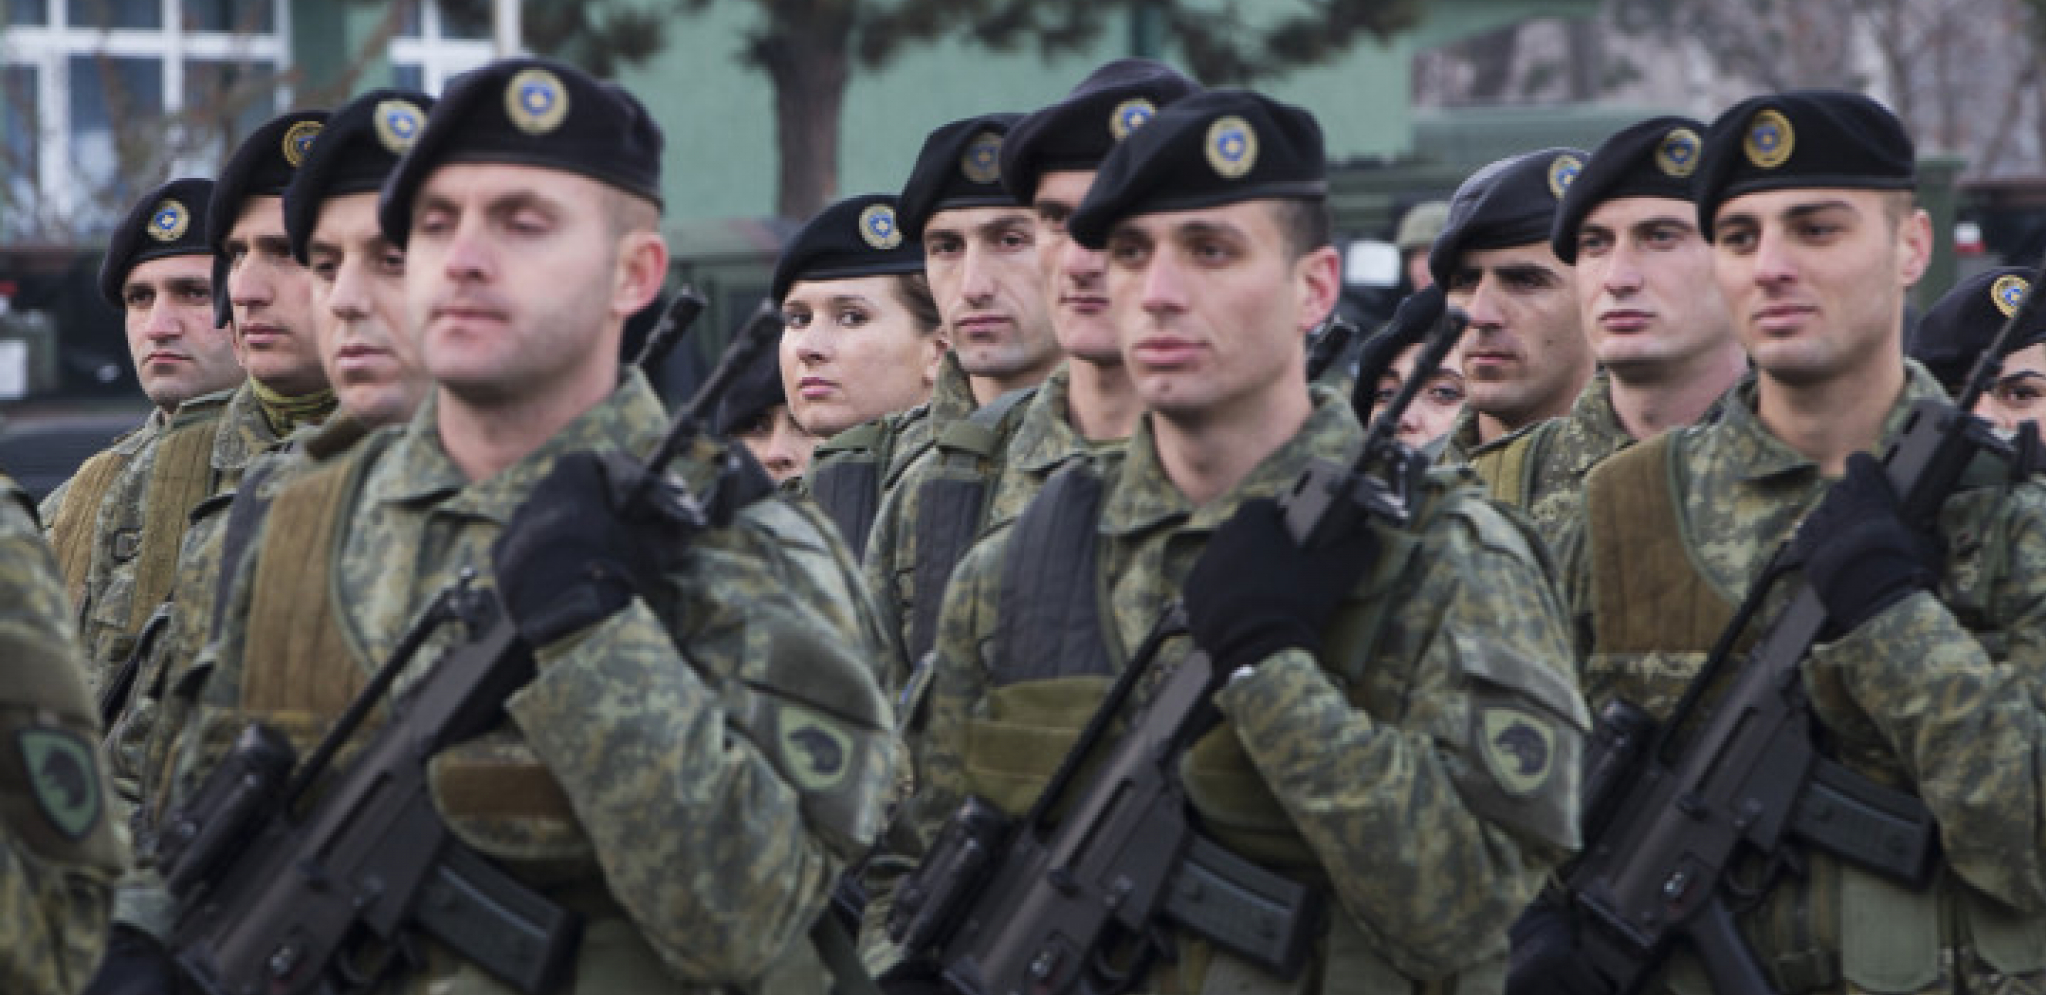 "LAUFER 21" - NATO OKUPLJA SVOJE POSLUŠNIKE Tzv. Kosovske bezbedonosne snage idu u Hrvatsku